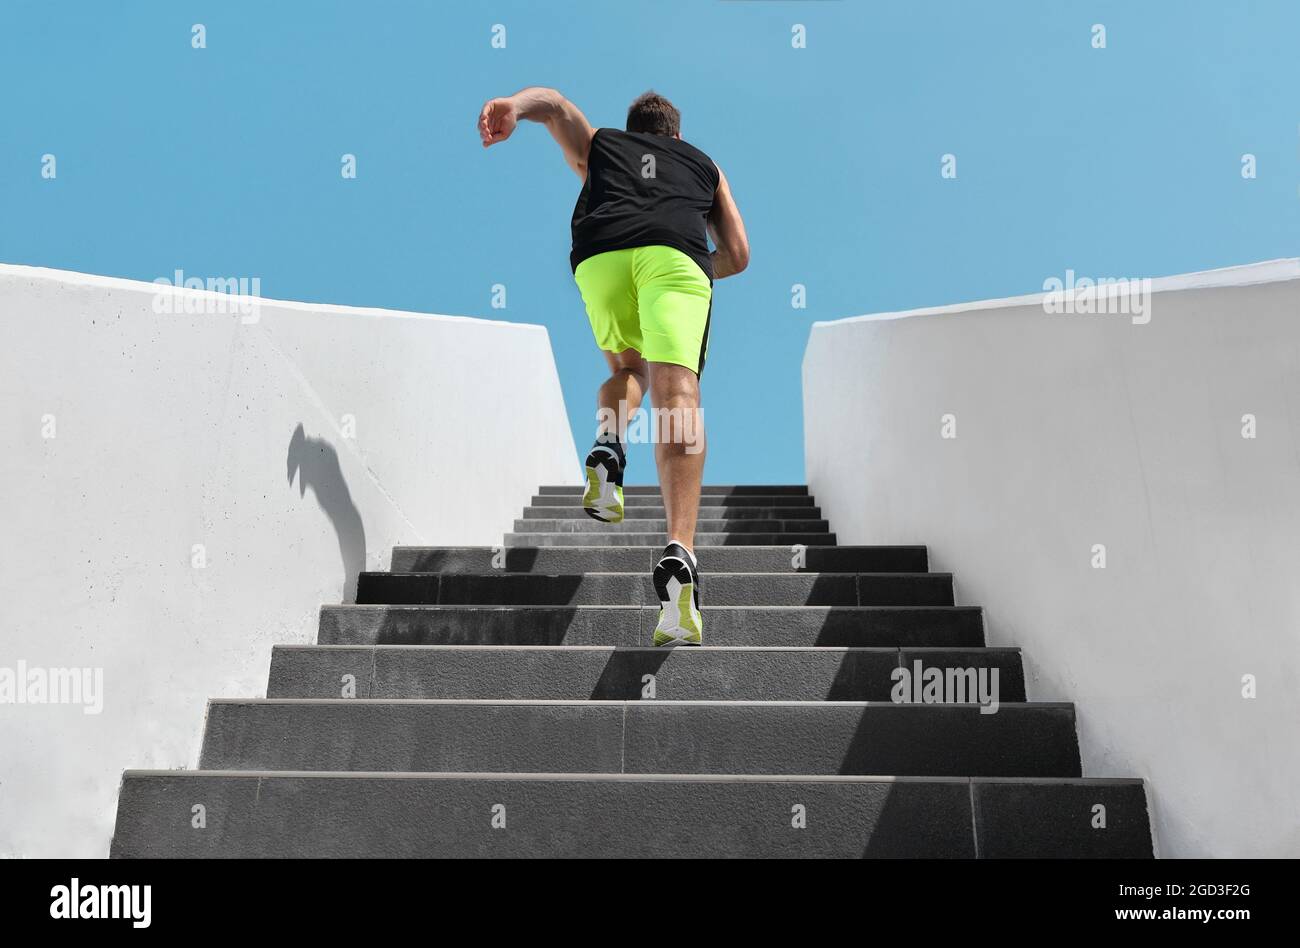 Treppen trainieren Fitess Mann läuft schnell die Treppe hoch für hiit Cardio-Workout laufen im Outdoor-Fitness-Studio. Sport aktiv Athlet Lifestyle Training Beine Stockfoto